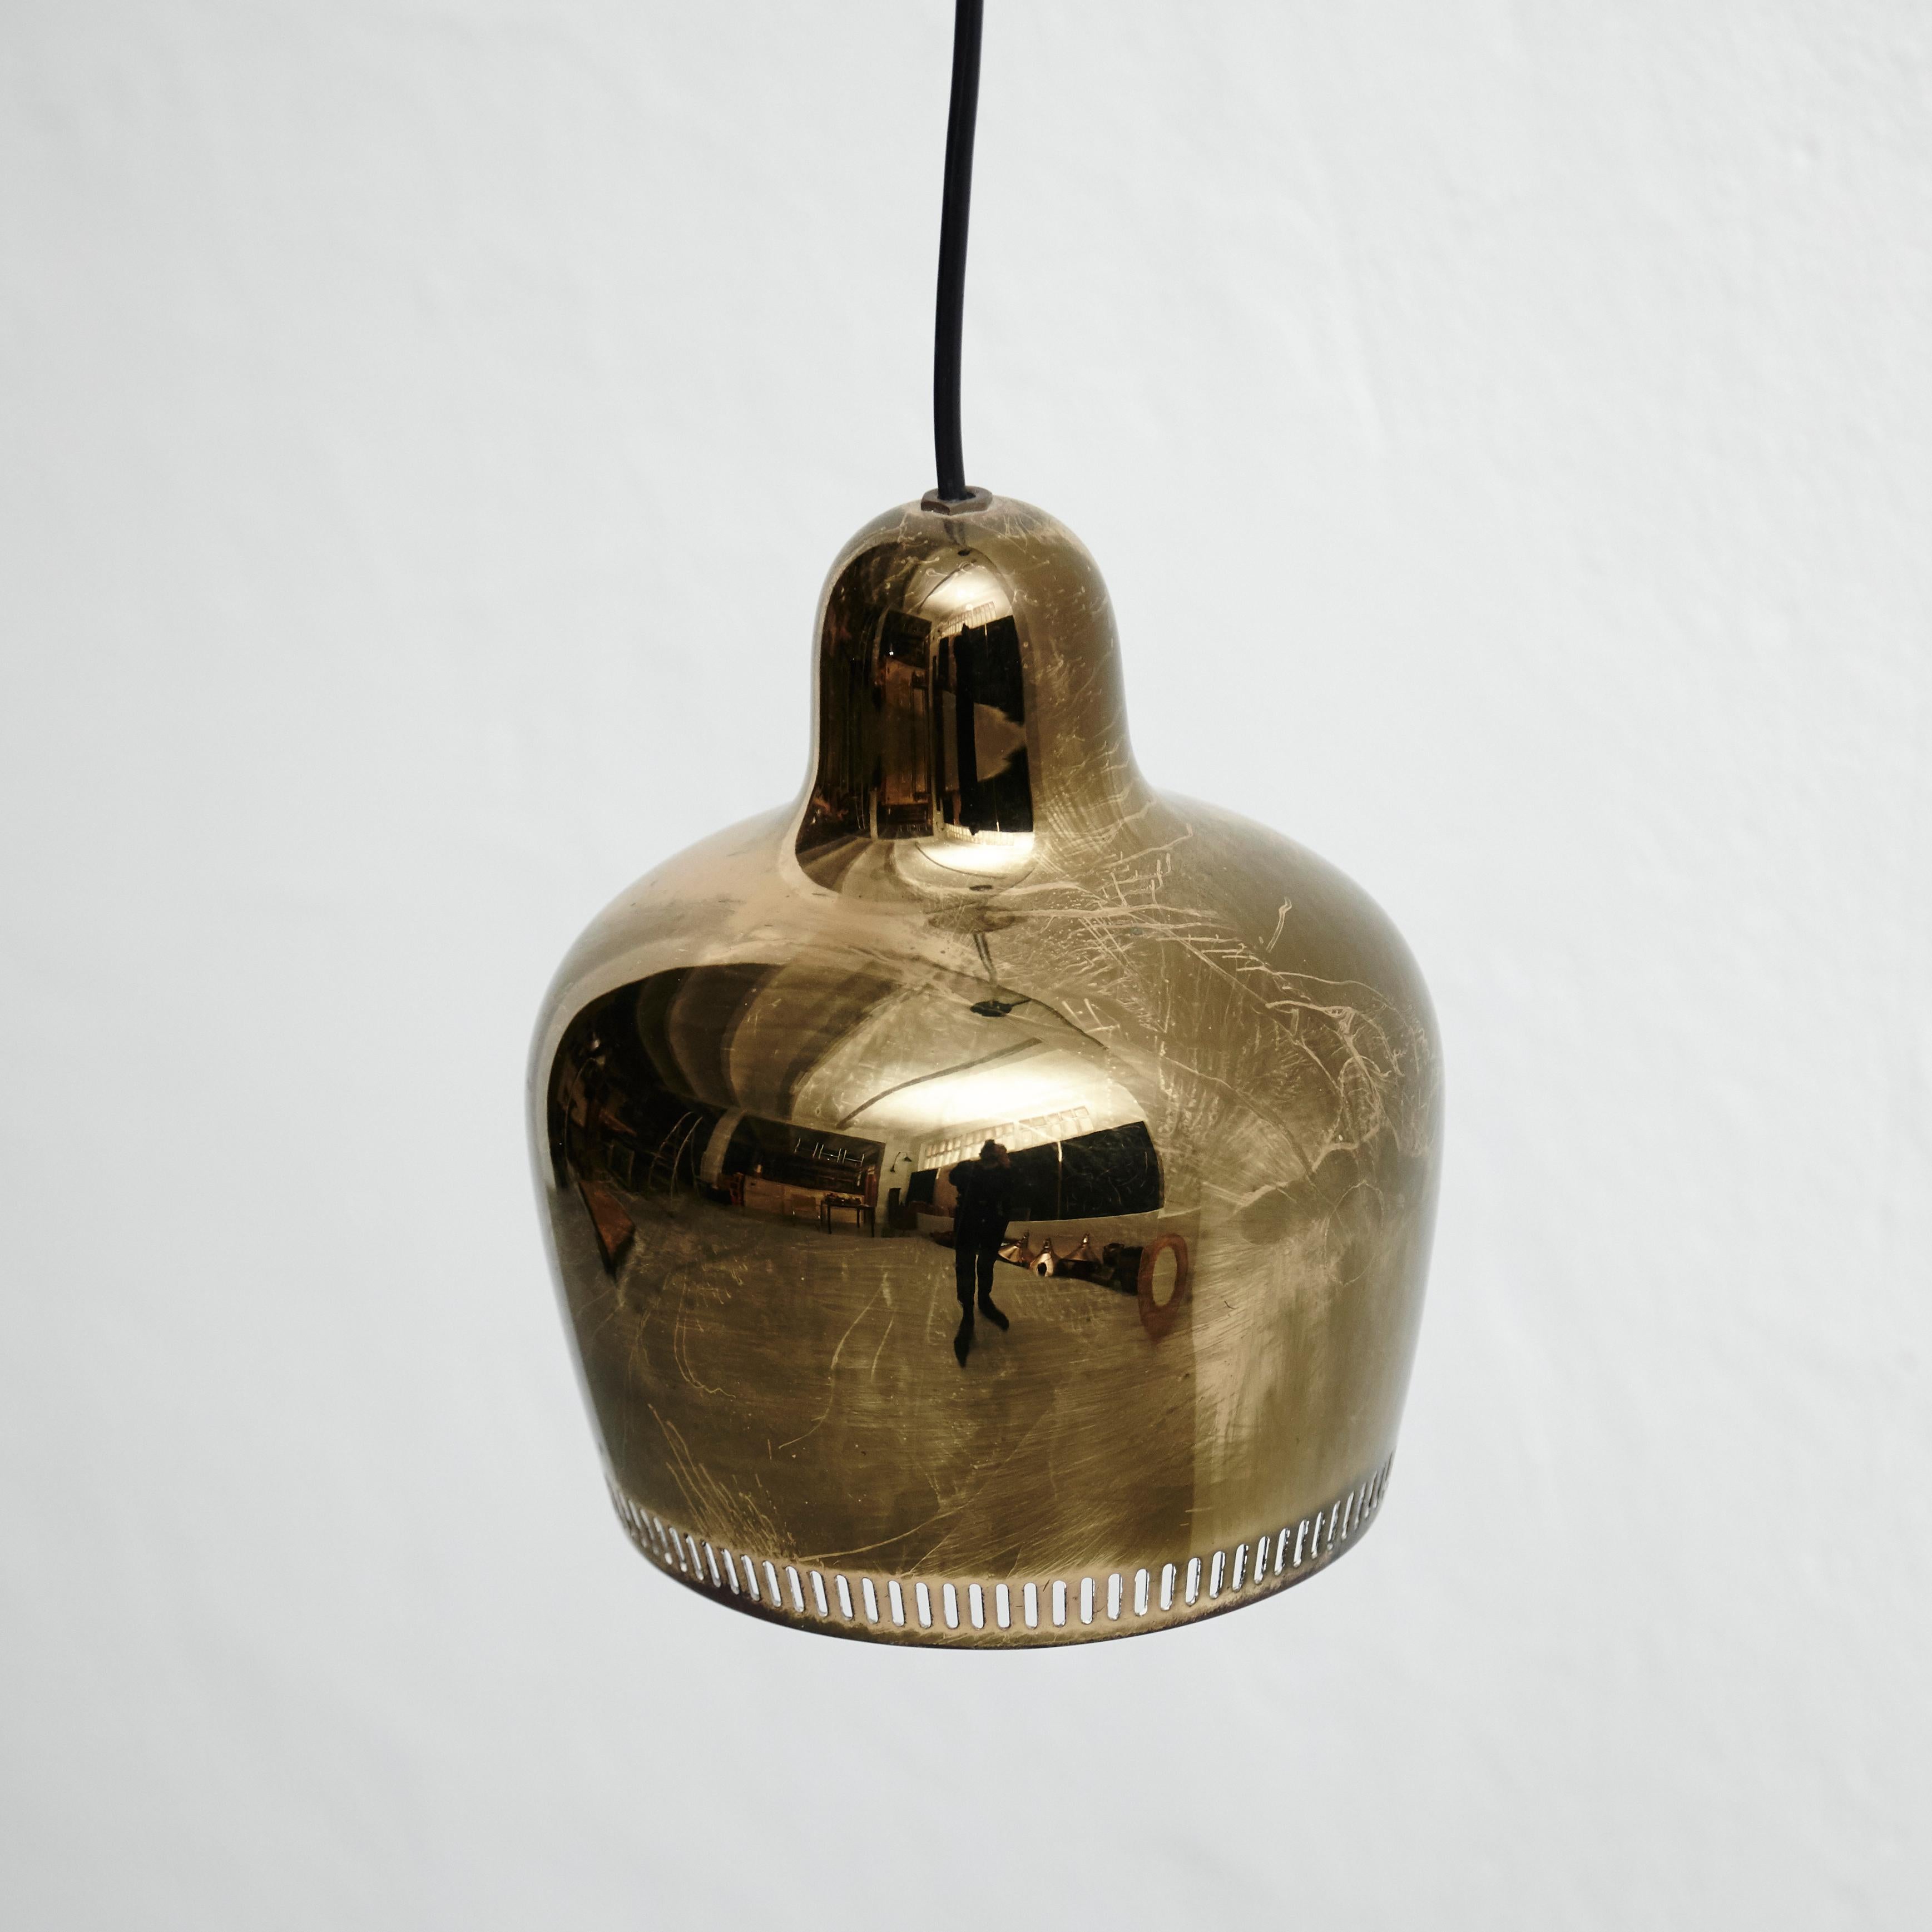 Finnish Alvar Aalto Golden Bell Pendant Lamp, circa 1950